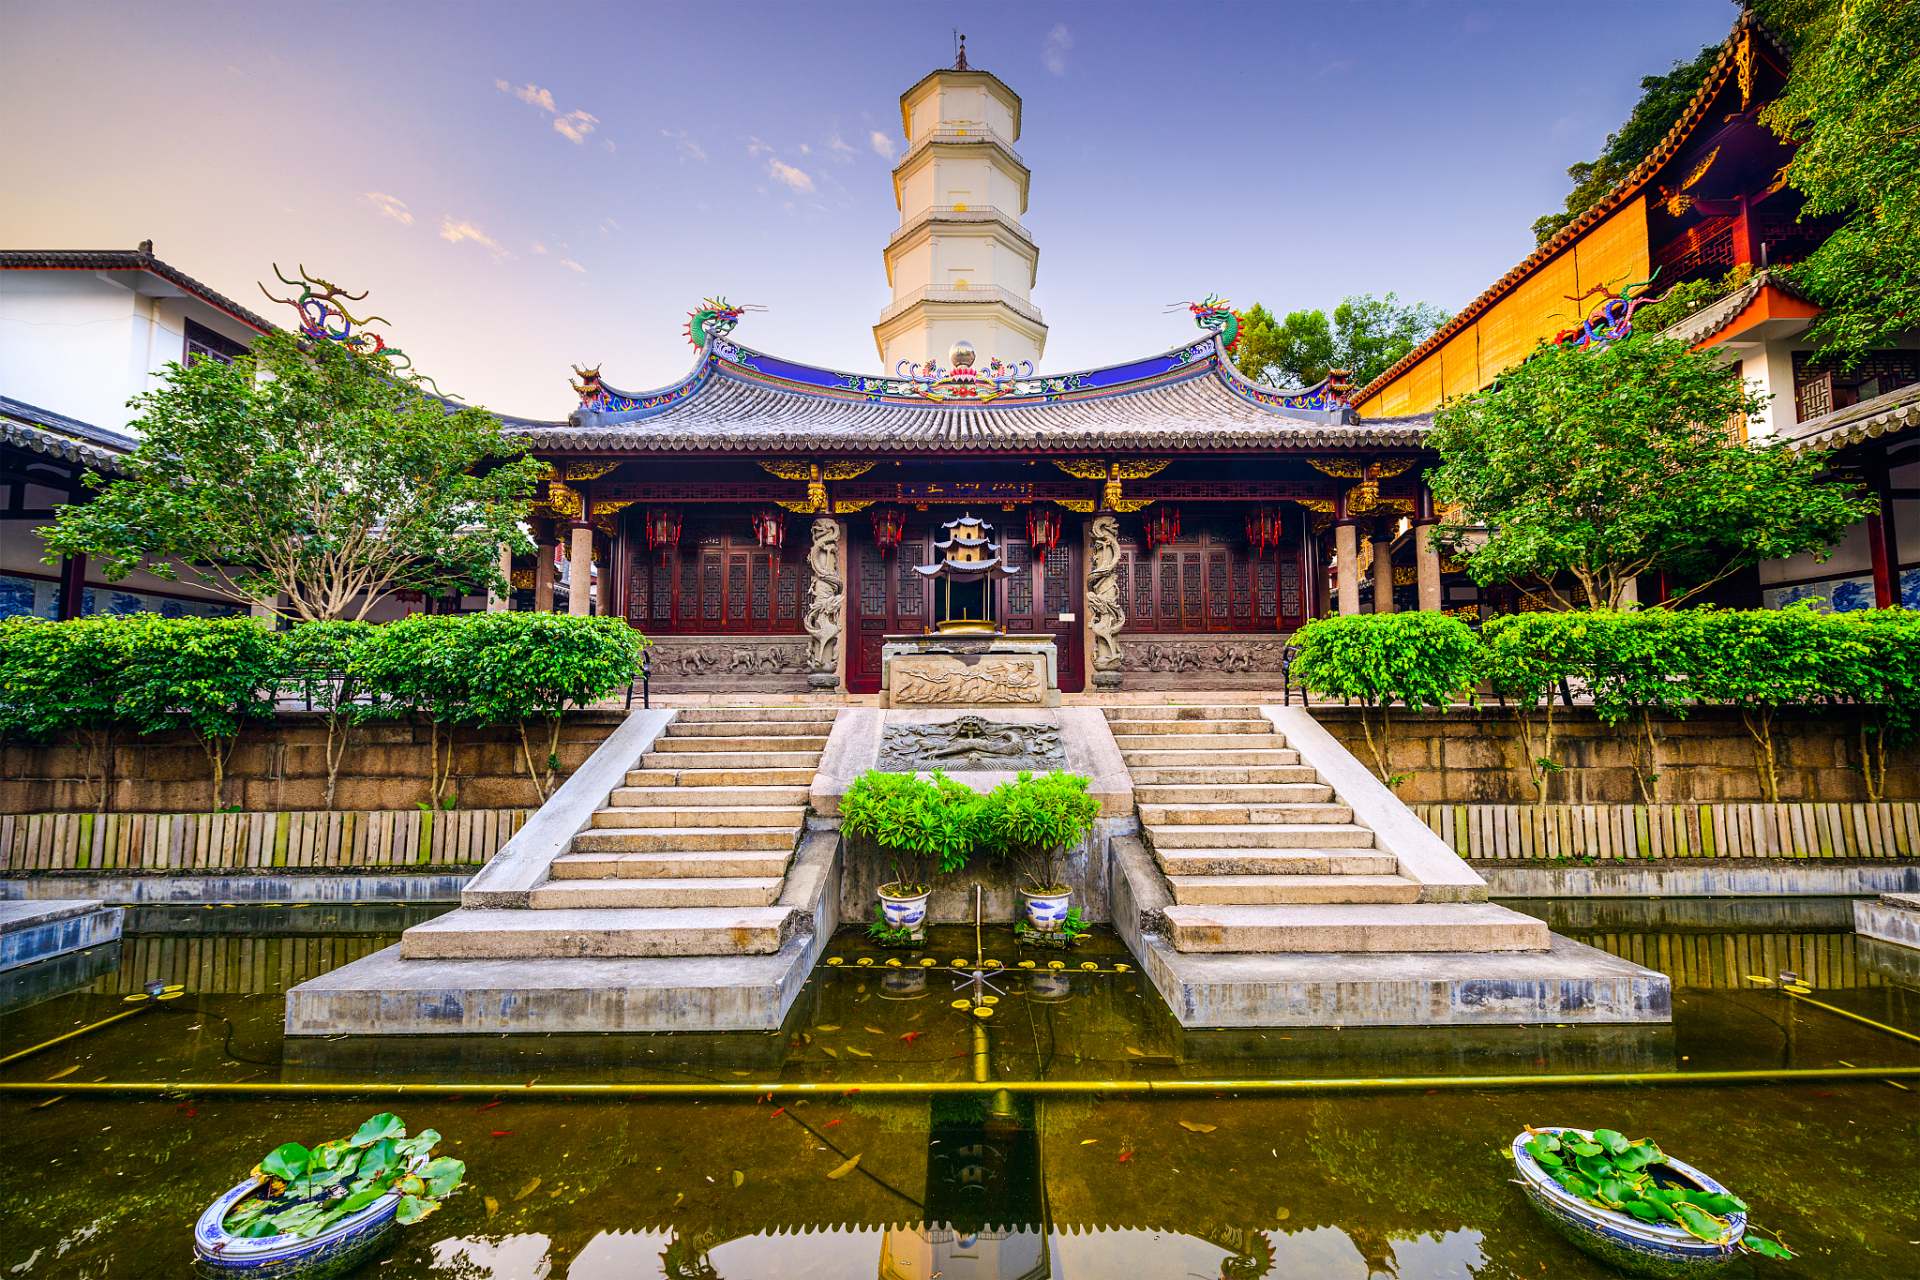 与普陀山的其他寺庙不同,慧济寺的建筑呈现出浙东园林风格,天王殿